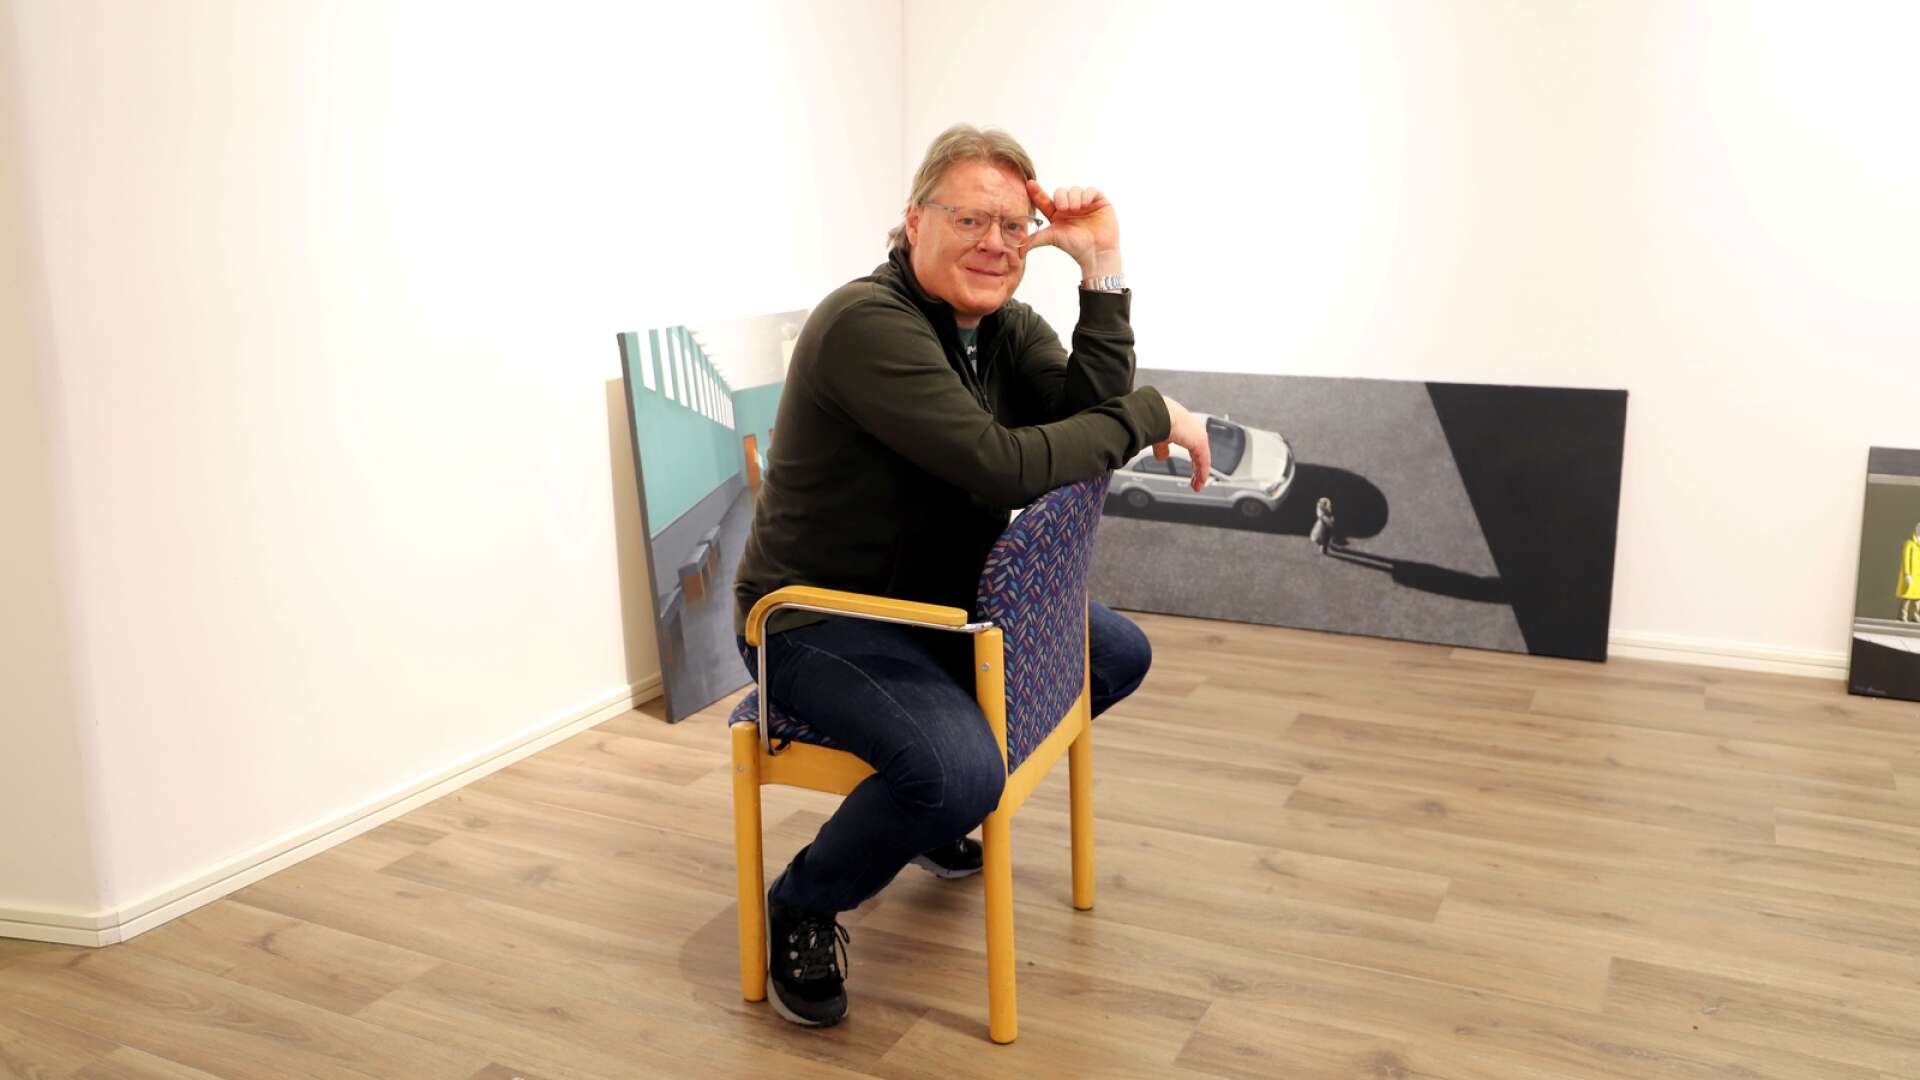 Karlstadskonstnären ställer ut på Konst i Karlstad efter ett rörigt år med både sorg och succé